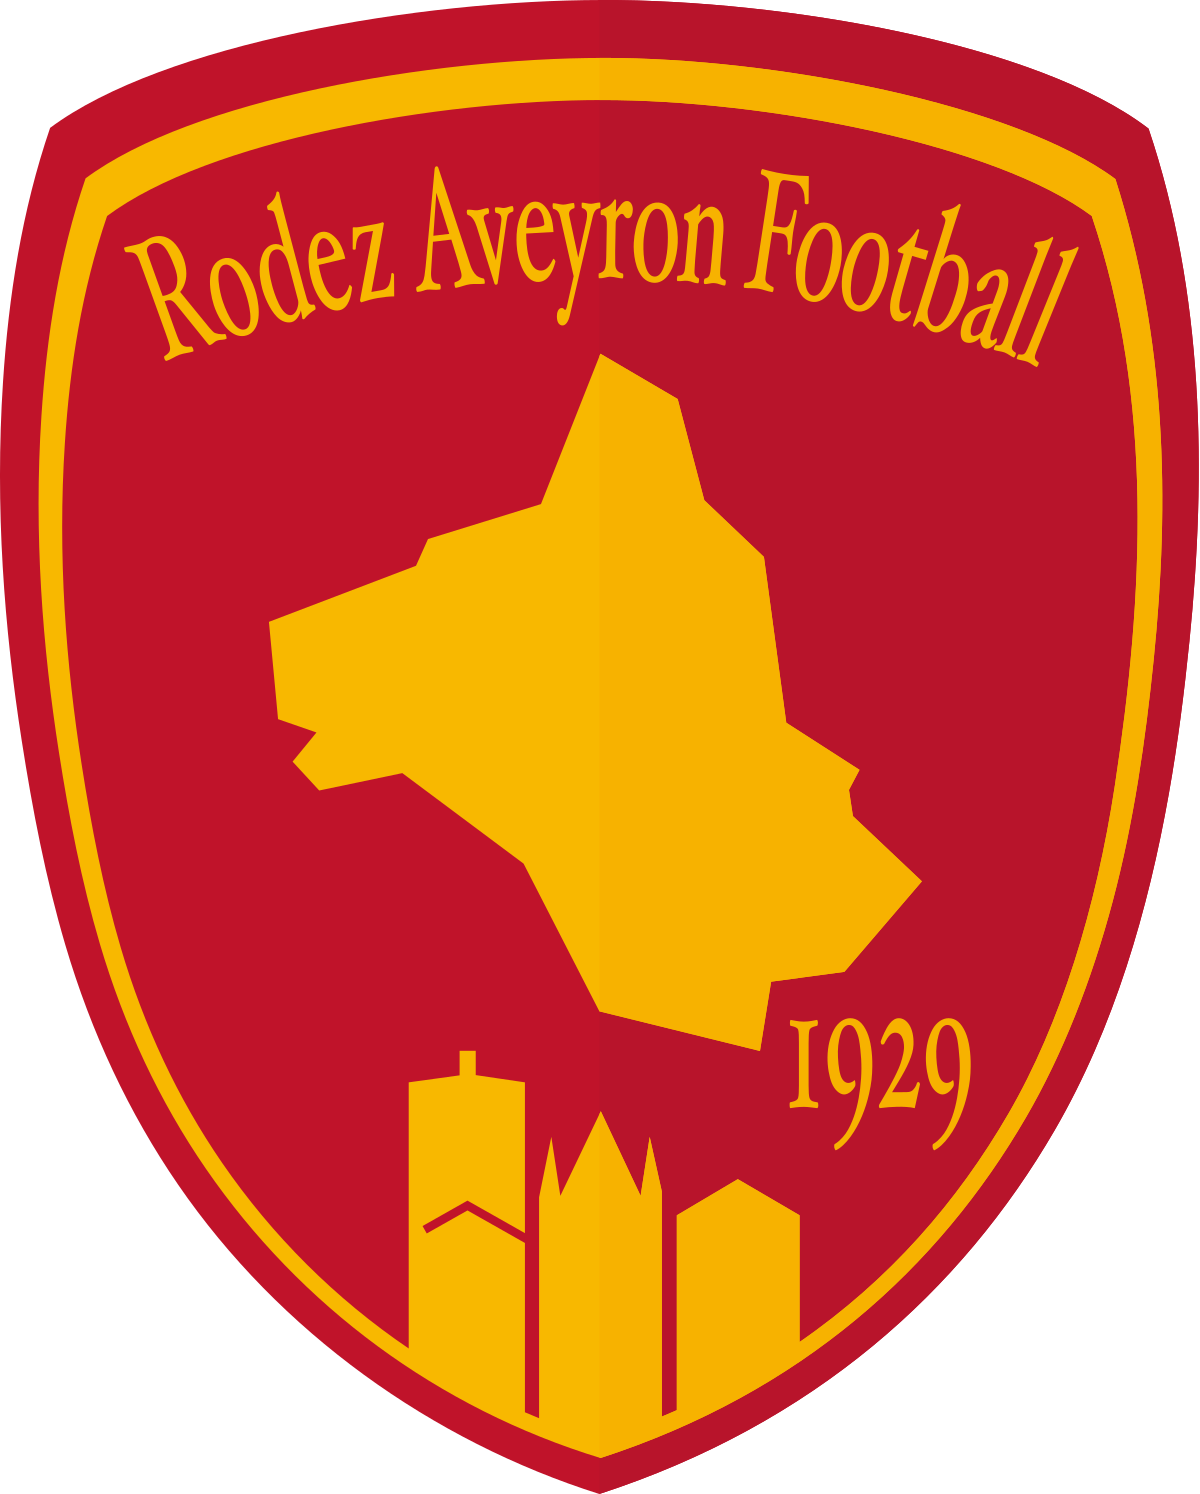 RODEZ AVEYRON FOOTBALL Logo